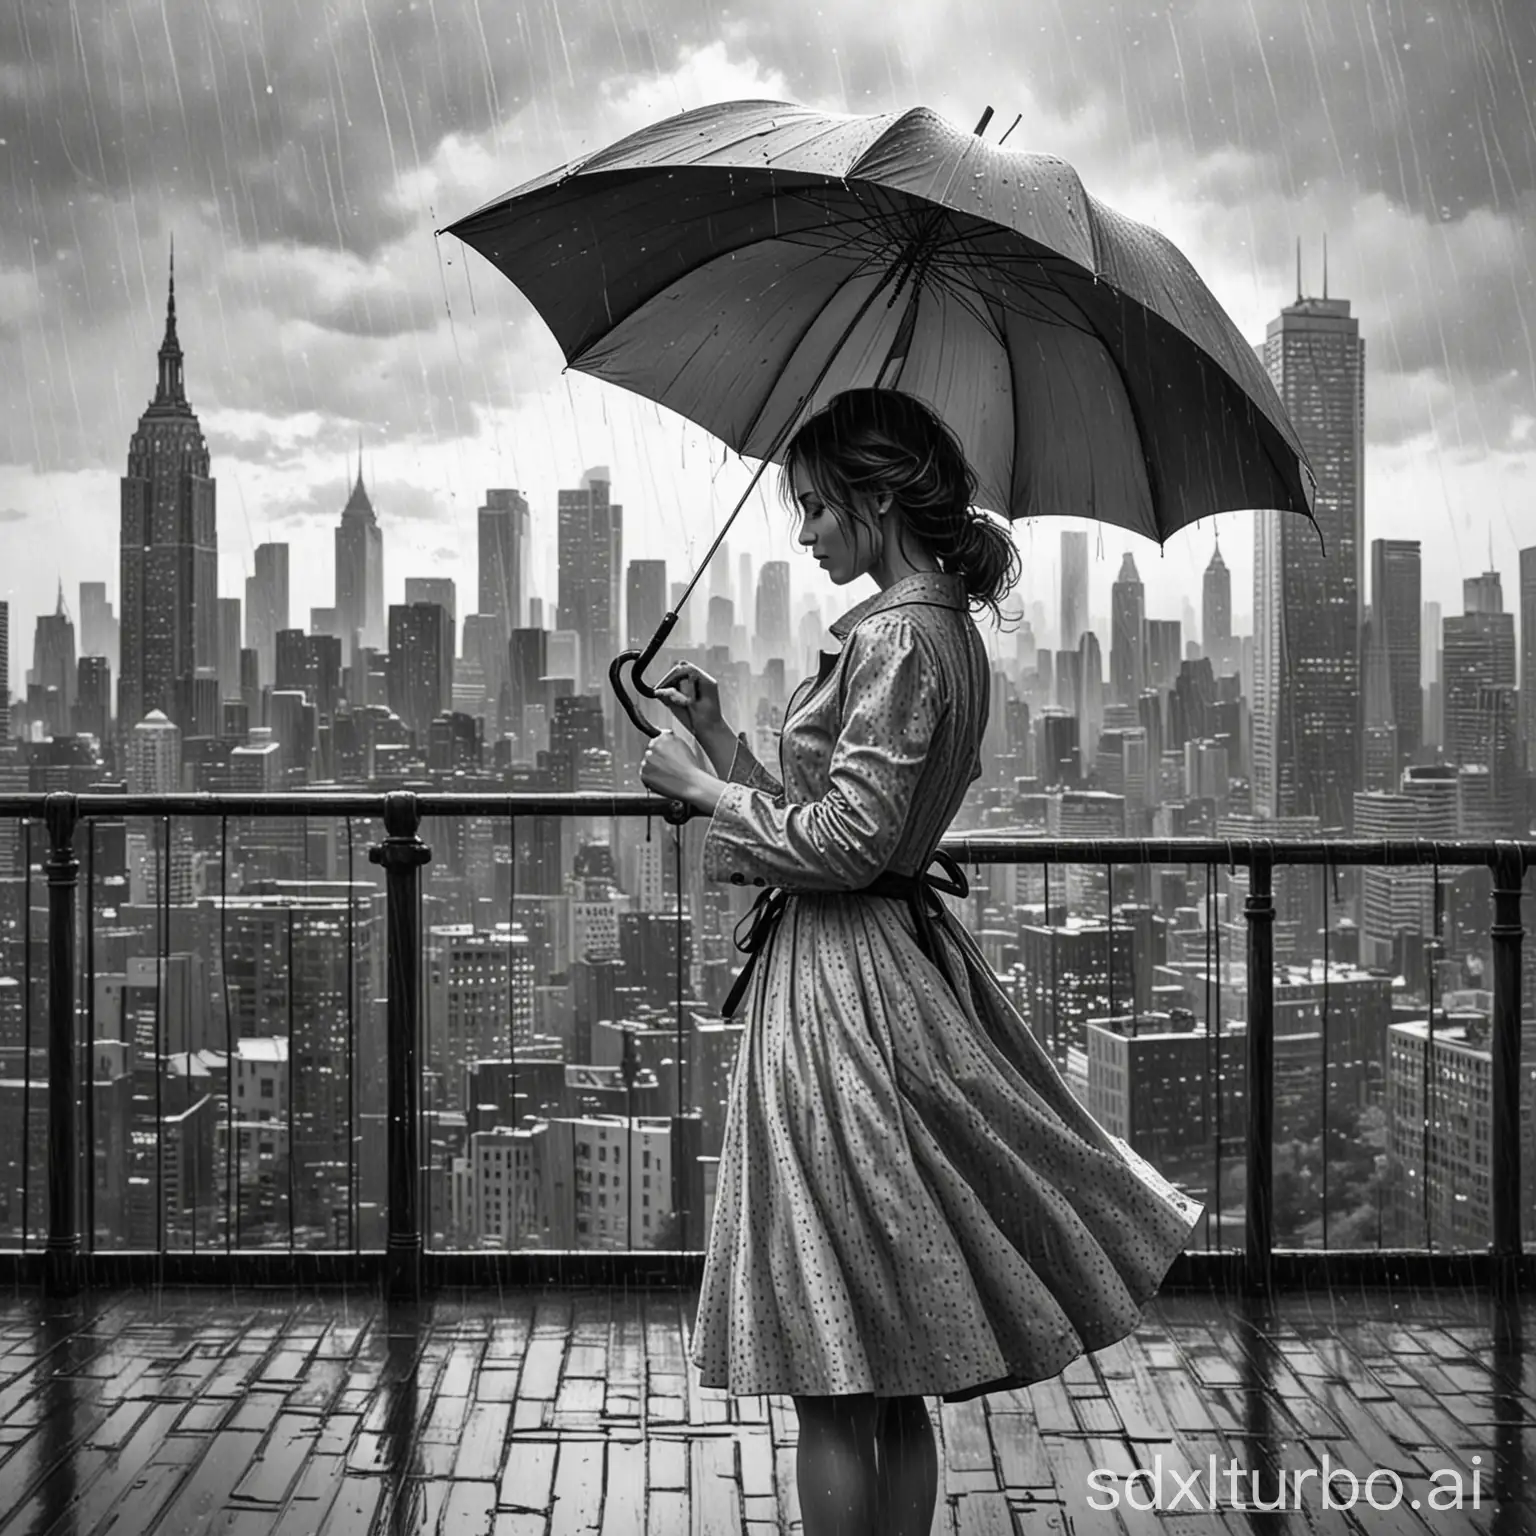 Line Art, schwarz weis,Frau mit Kleid und Regenschirm,Regentag in der Stadt, Skyline